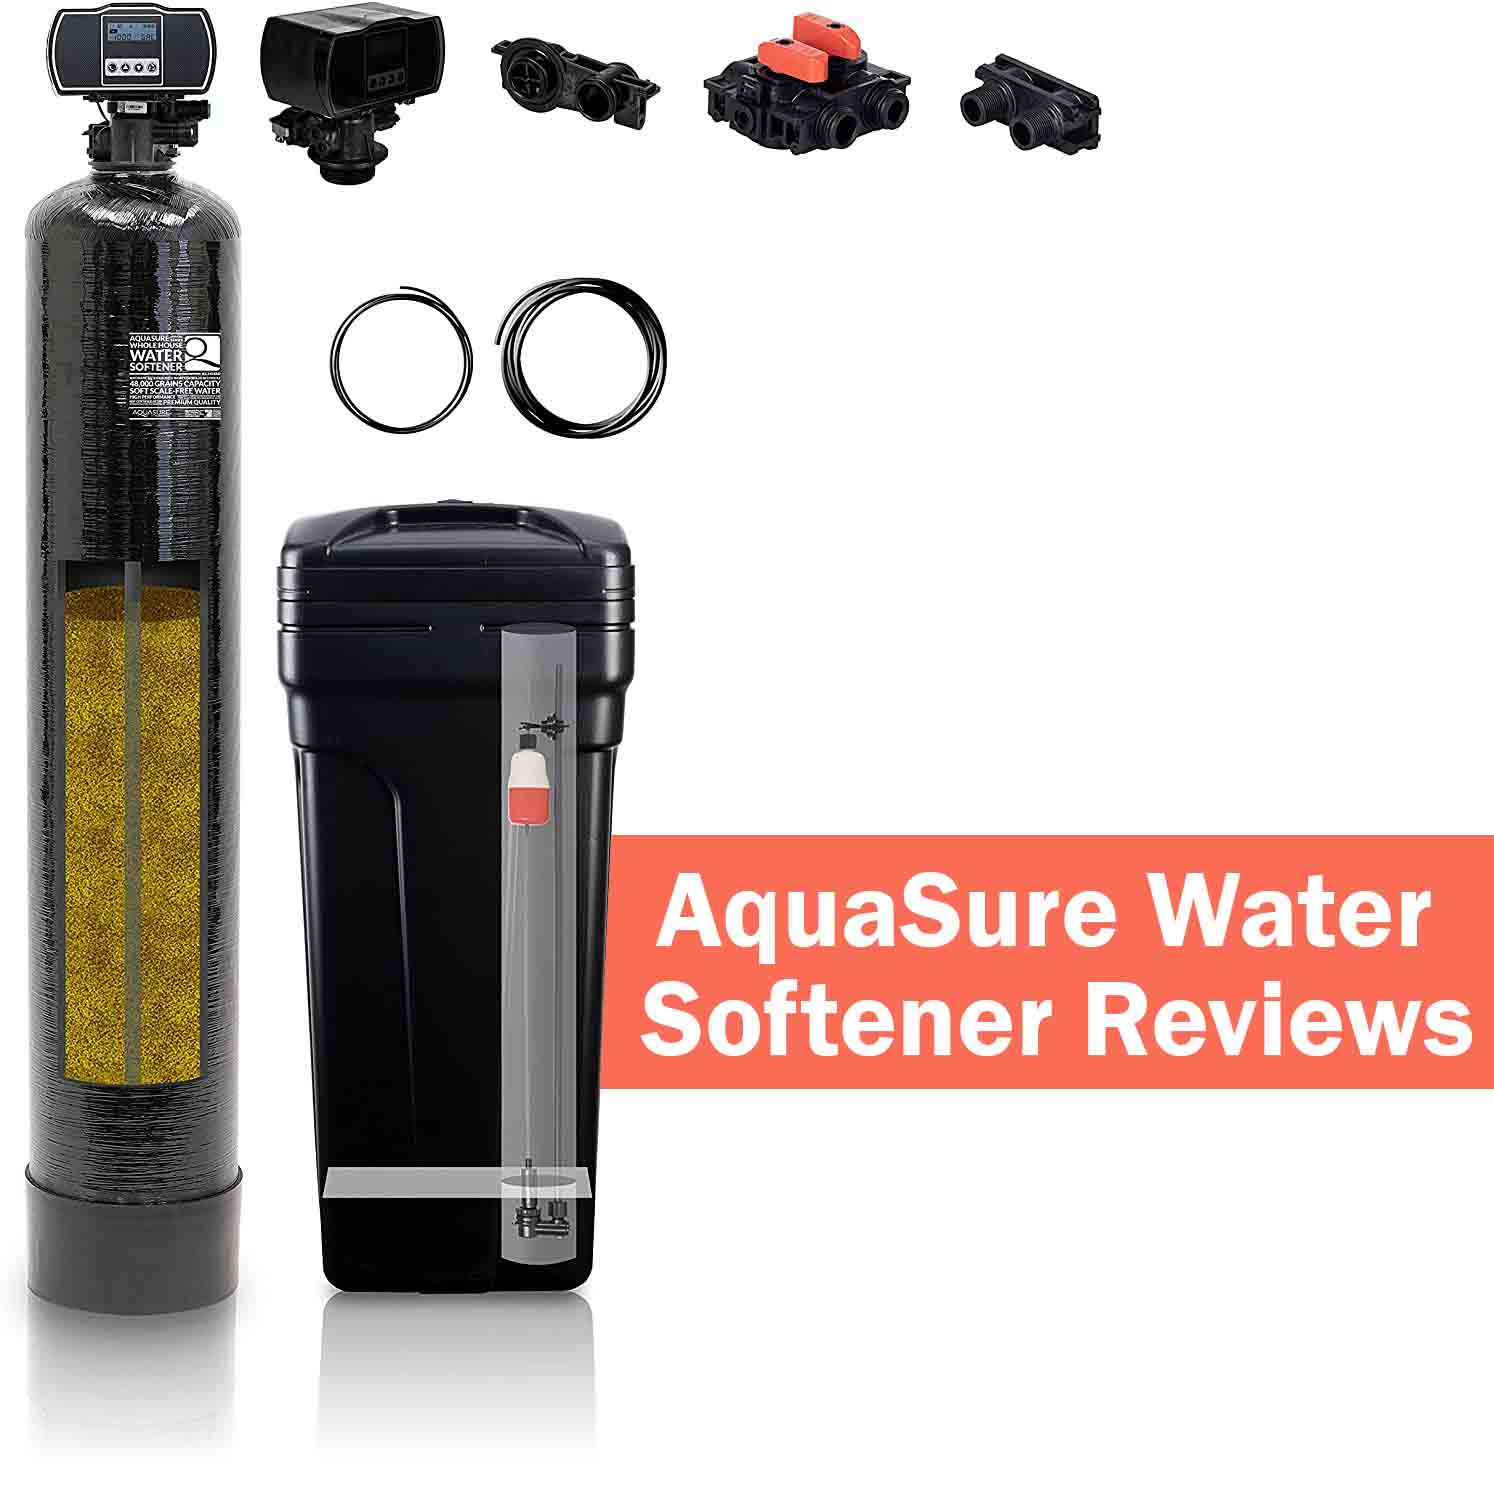 AquaSure Water Softener Reviews